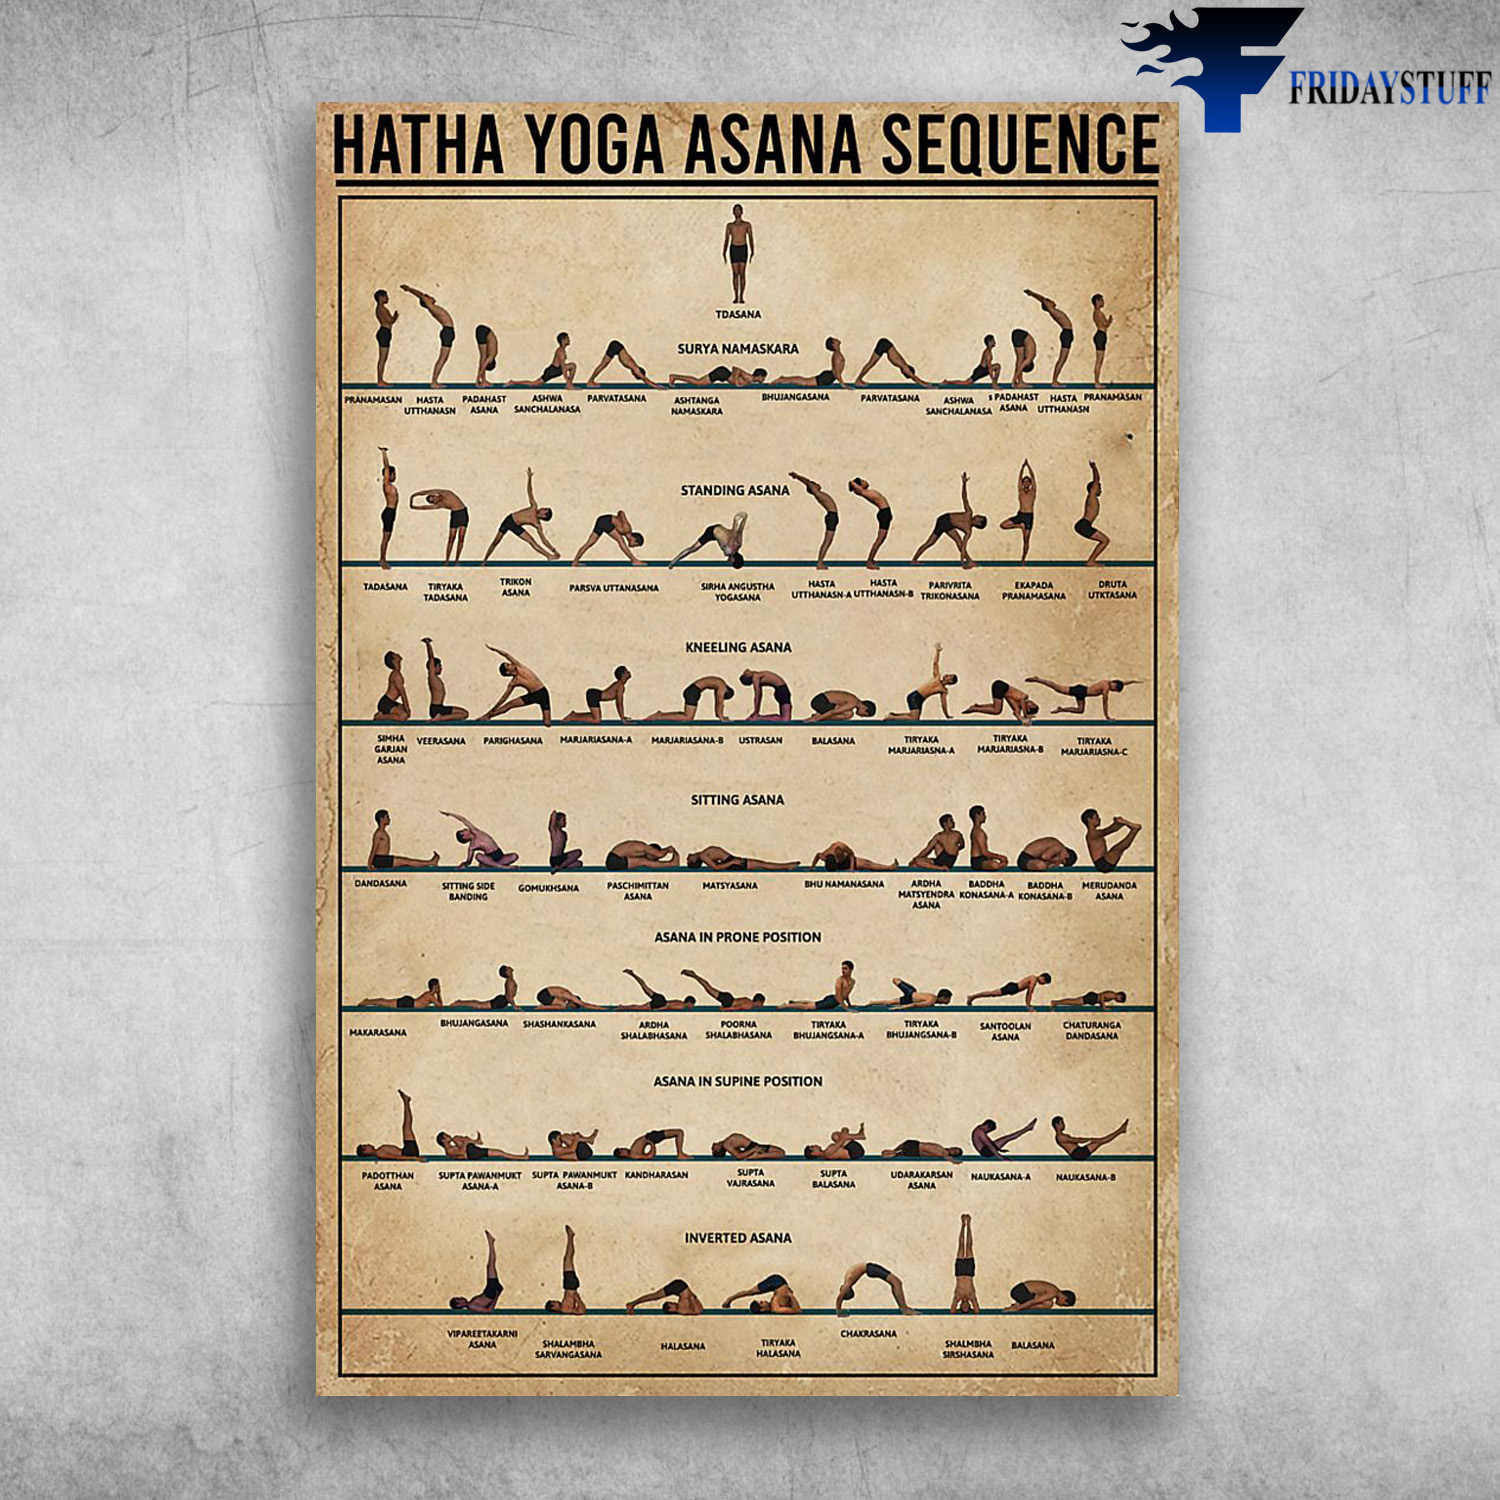 Hatha Yoga Asana Sequence Tdasana Standing Asana